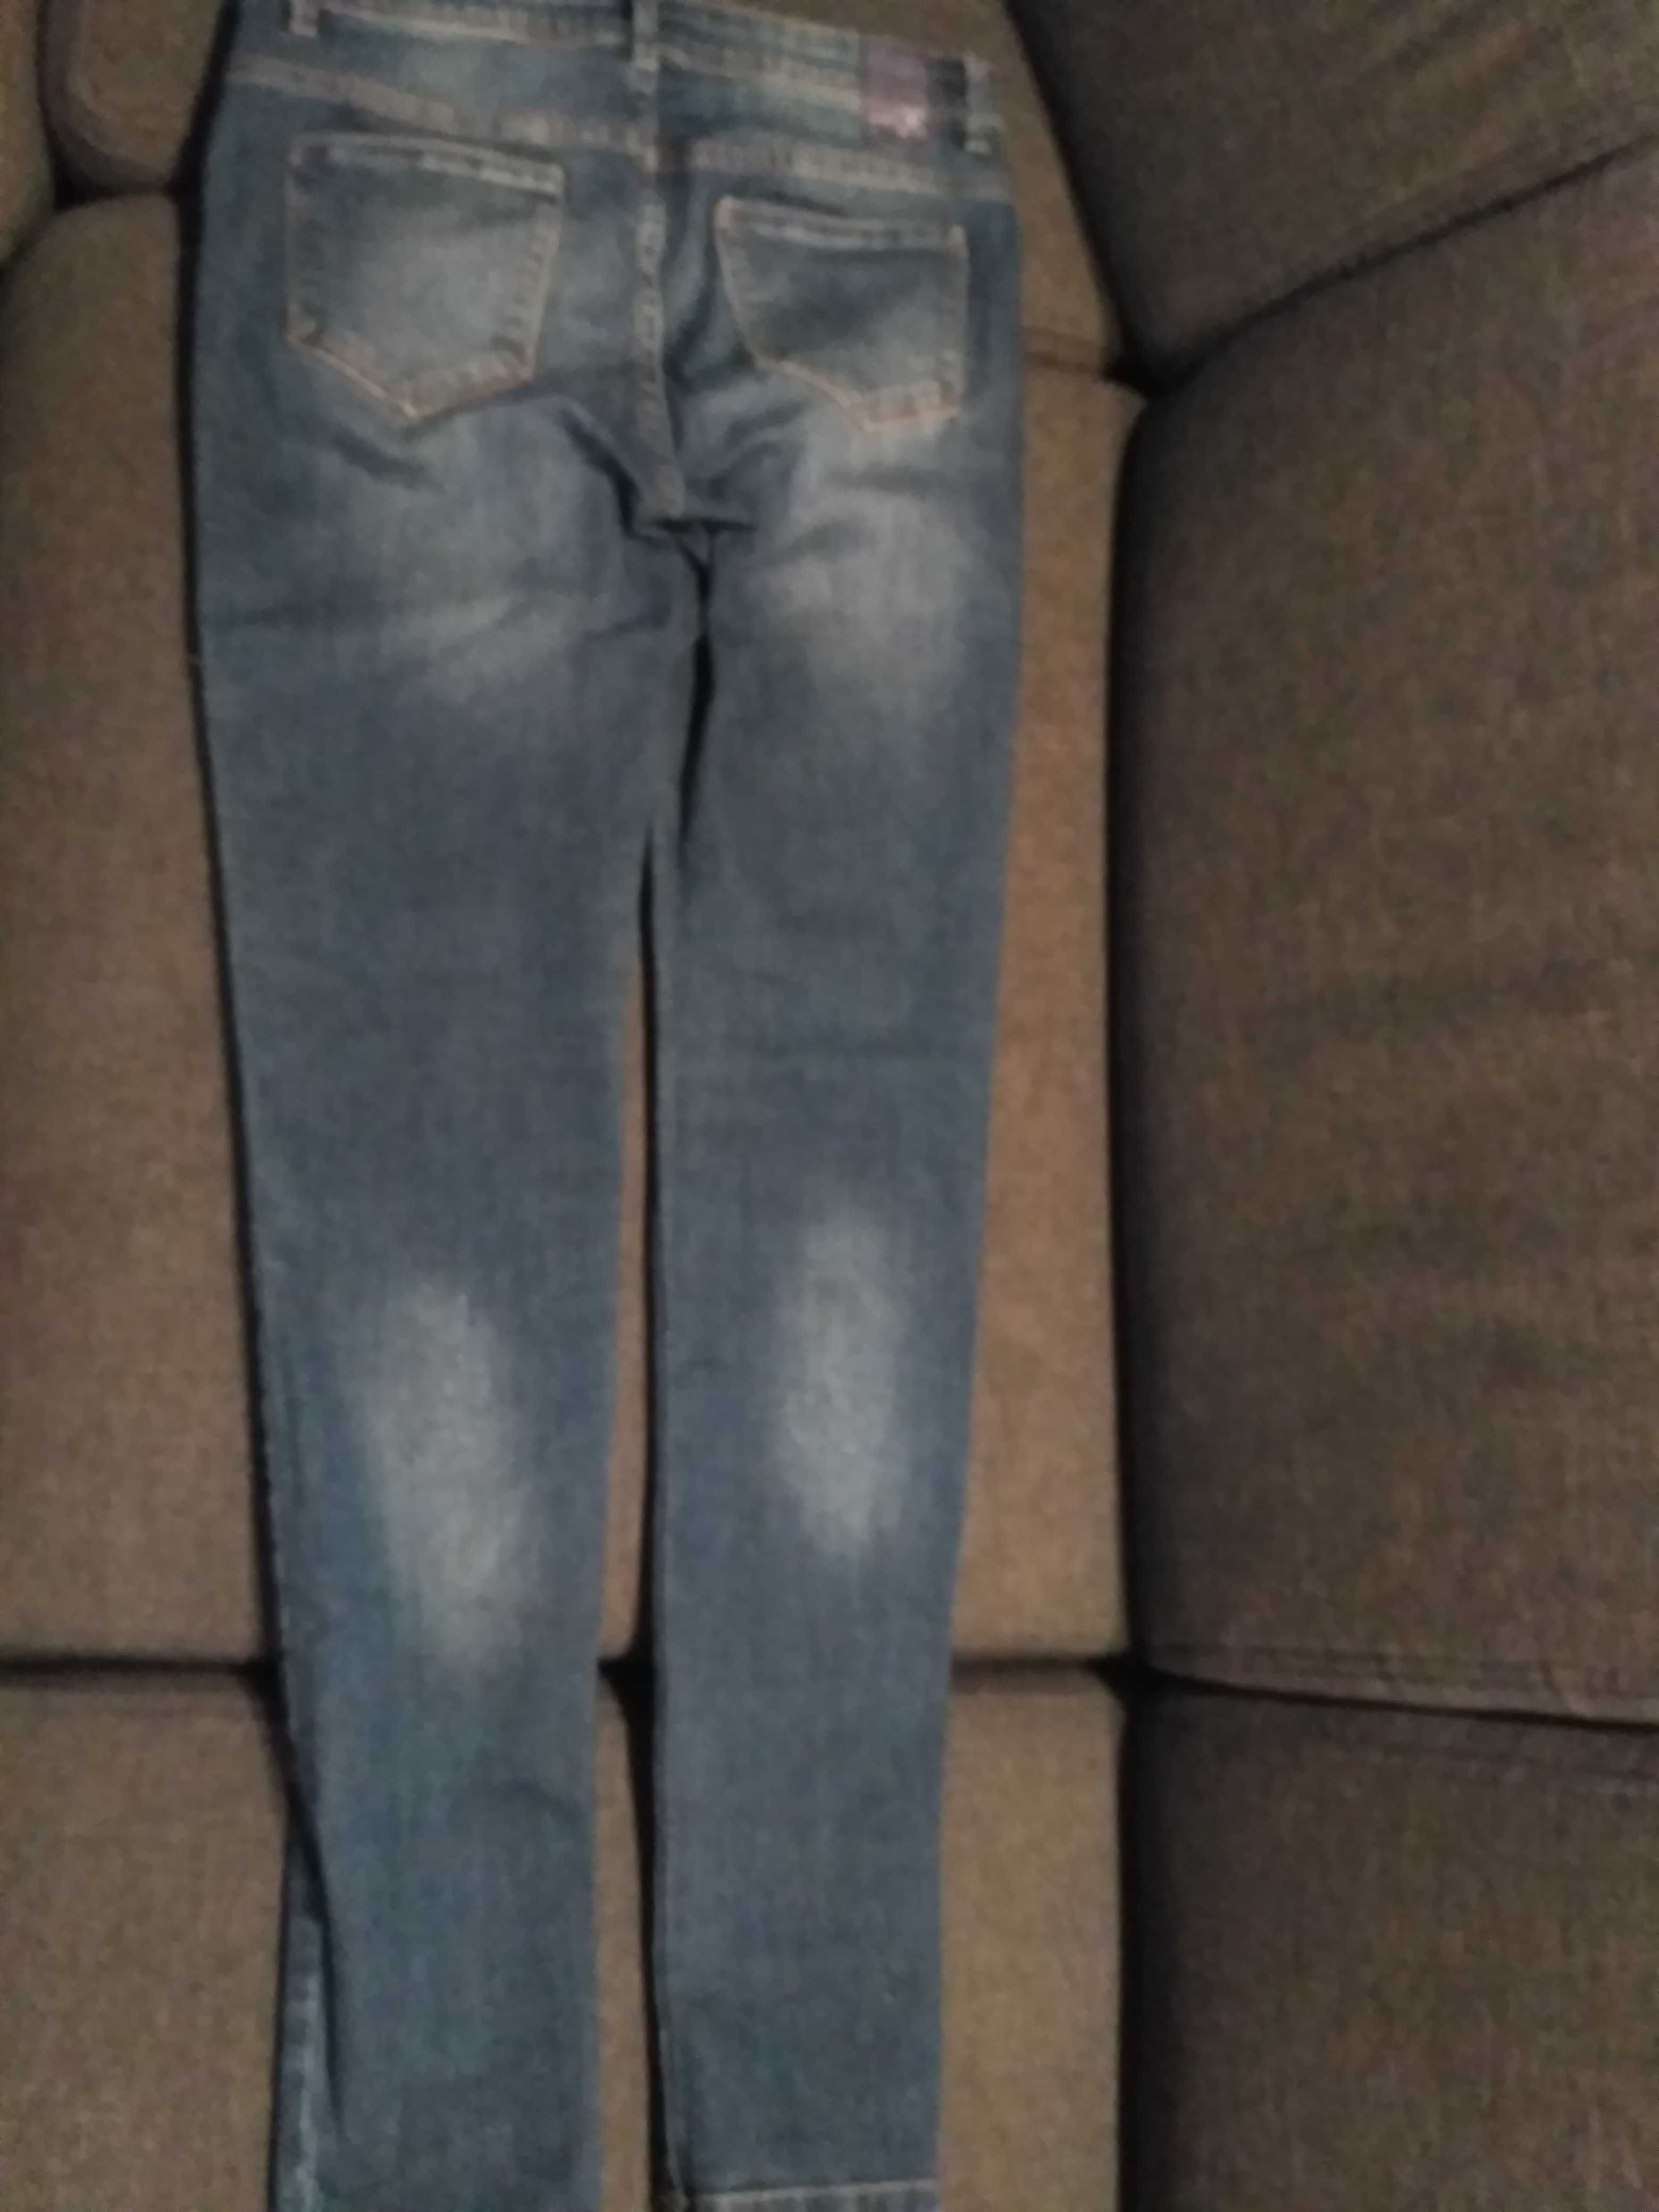 Spodnie jeans Promod!